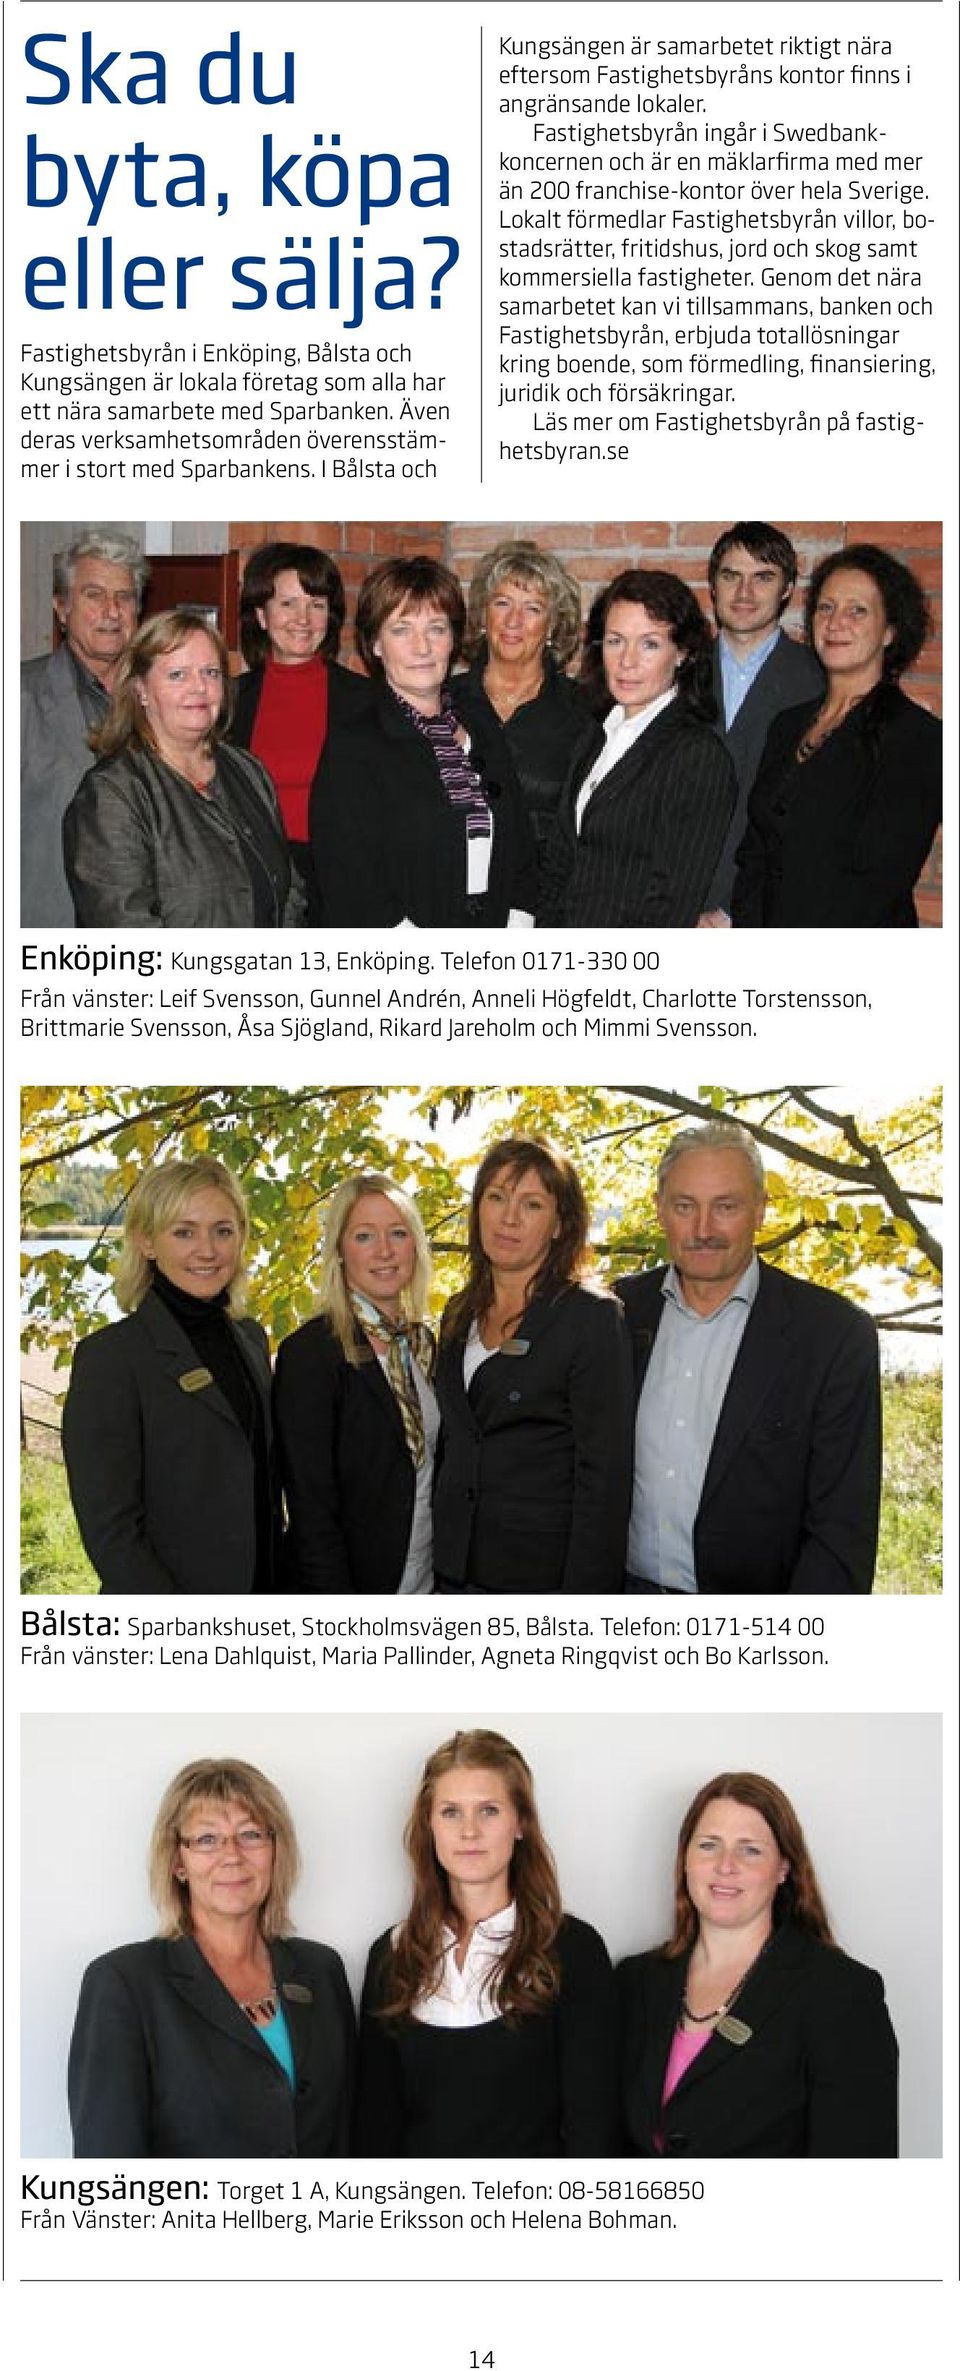 Fastighetsbyrån ingår i Swedbankkoncernen och är en mäklarfirma med mer än 200 franchise-kontor över hela Sverige.